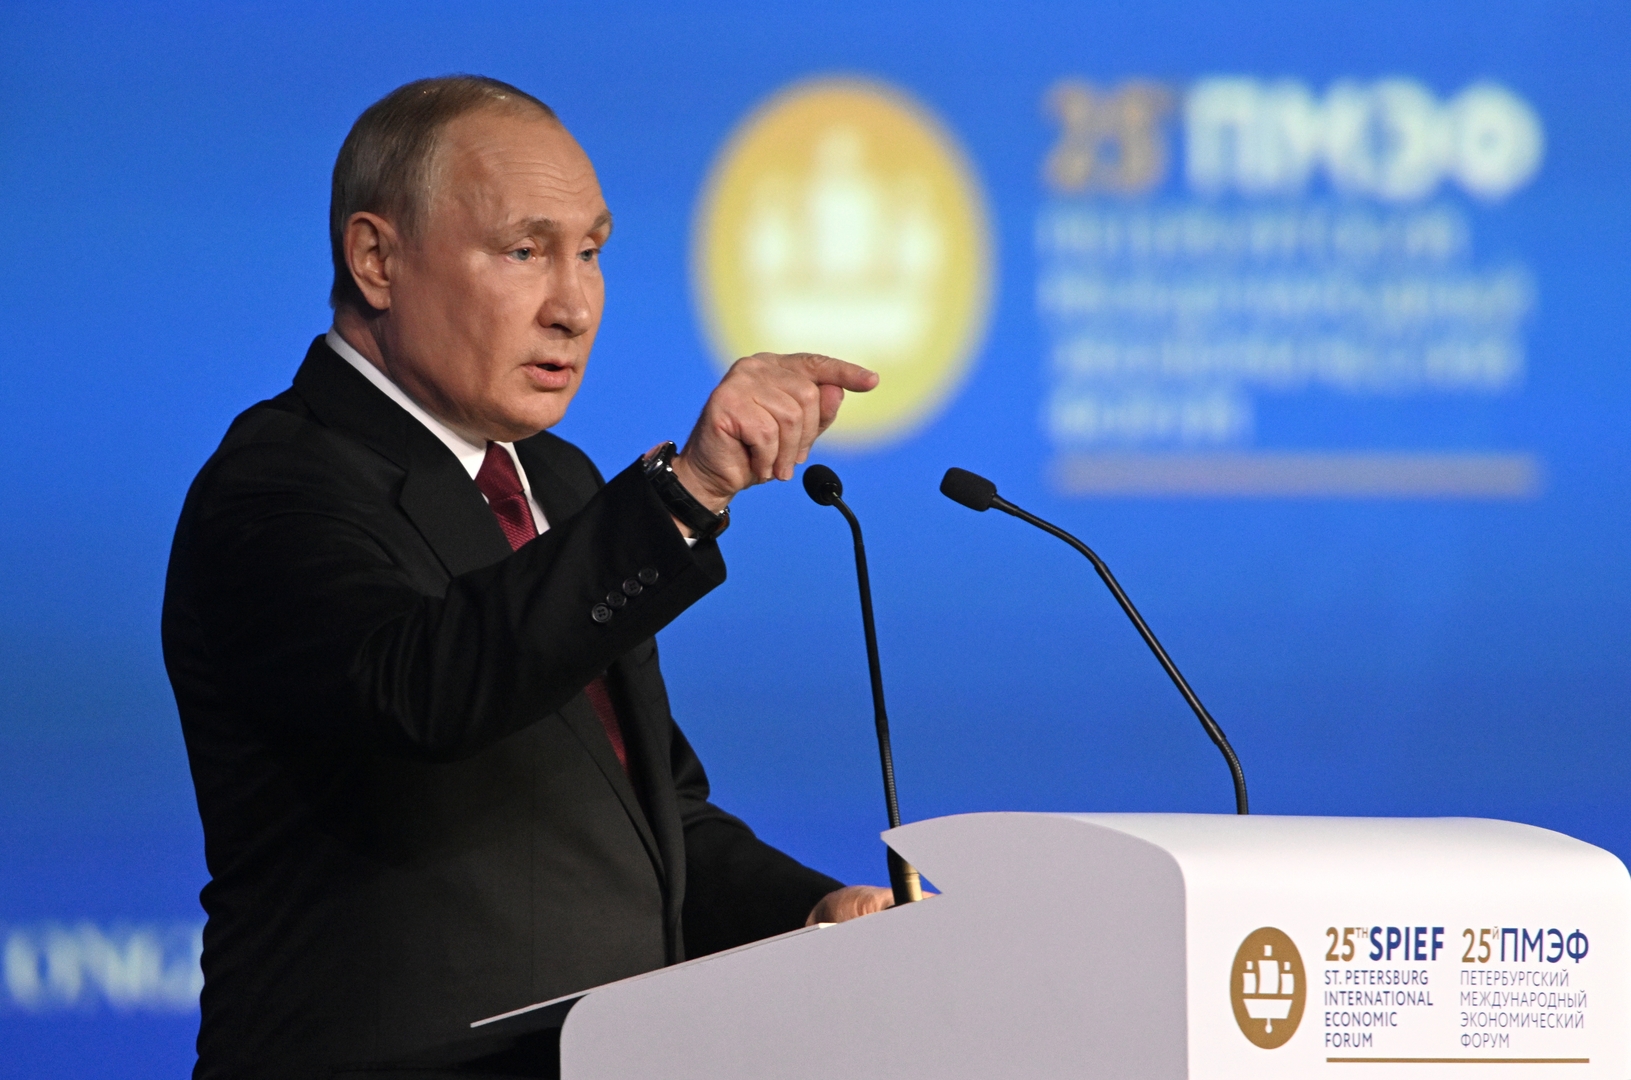 حول تنمية روسيا وأخطاء الغرب.. أبرز نقاط خطاب بوتين في منتدى بطرسبورغ الاقتصادي